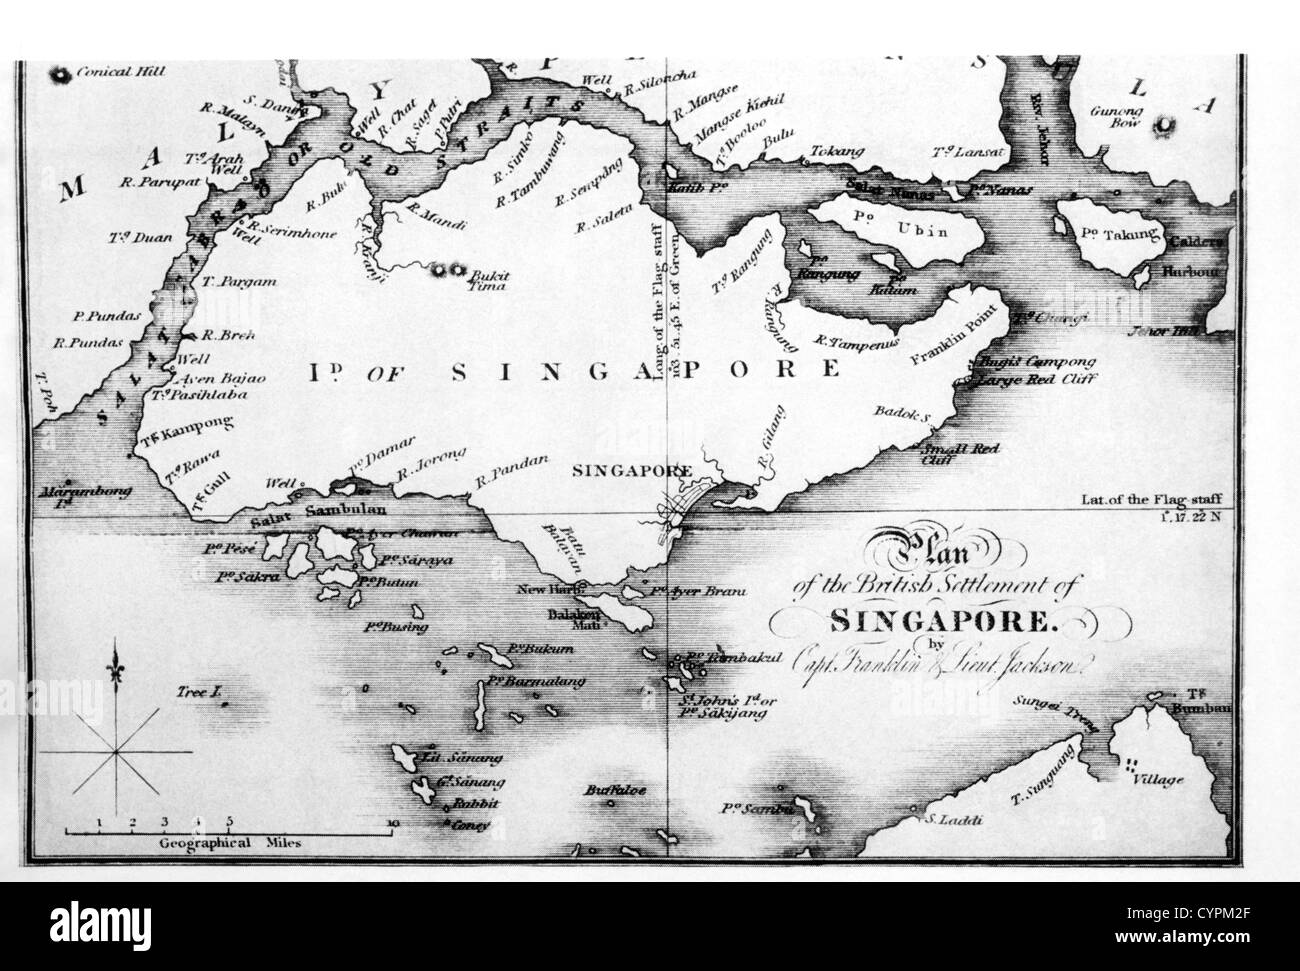 Karte der Insel Singapur von j.Crawford" Botschaft zum Siam', 1828 Stockfoto